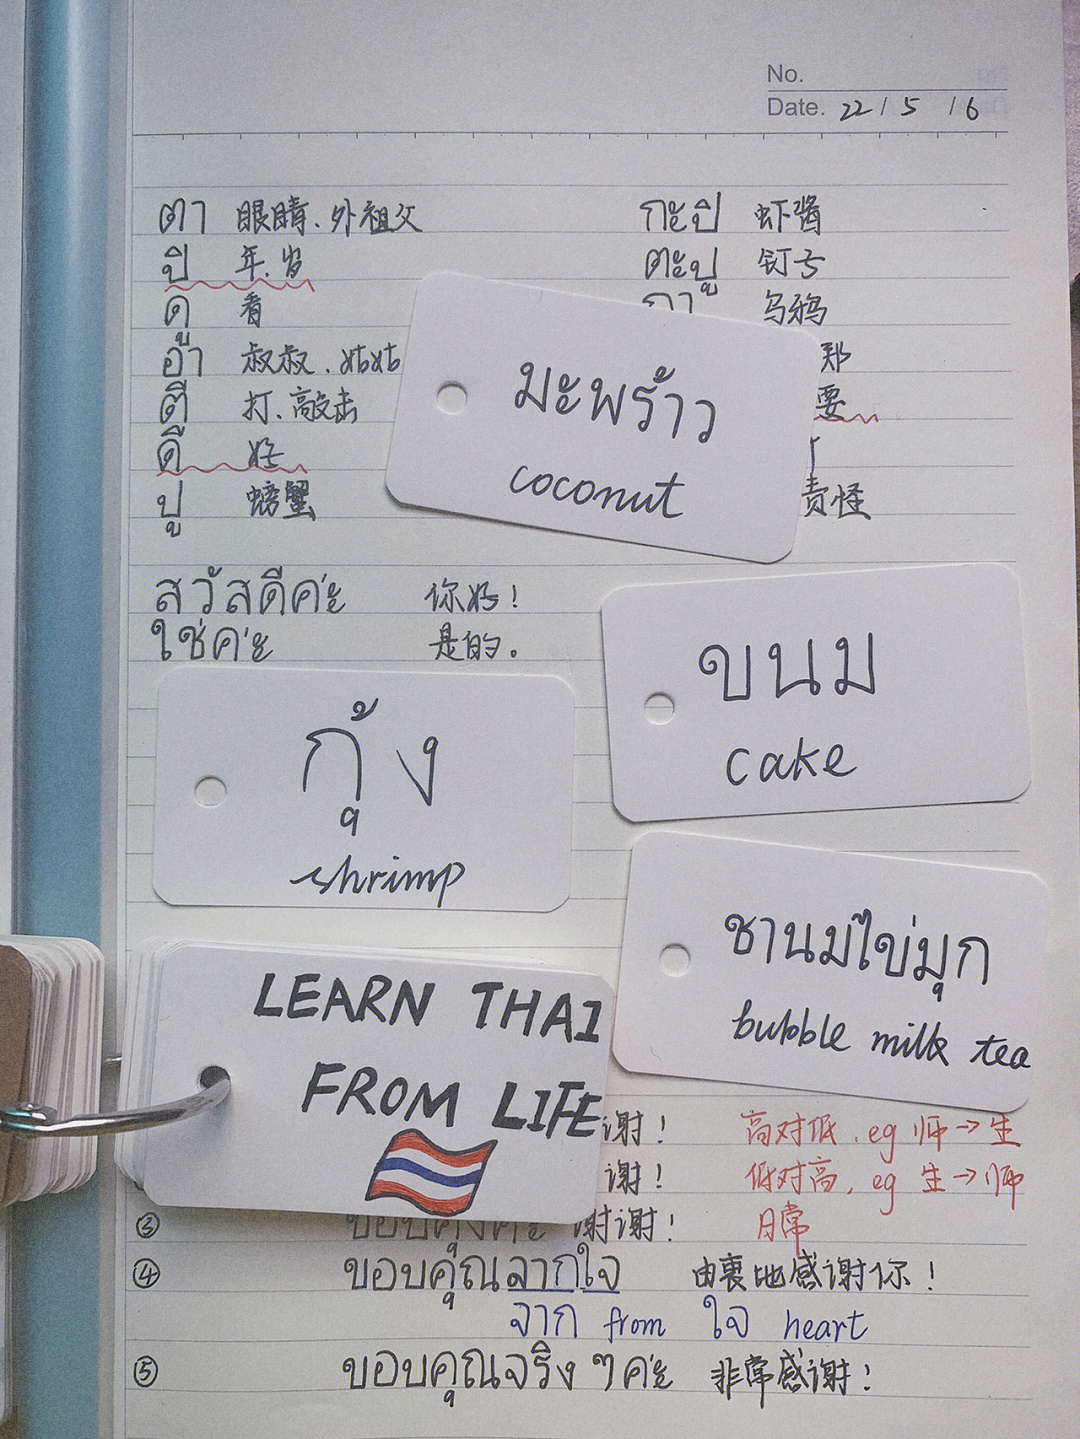 从今天开始每天搜集生活中常见的5个单词翻译成泰语然后放进自己的